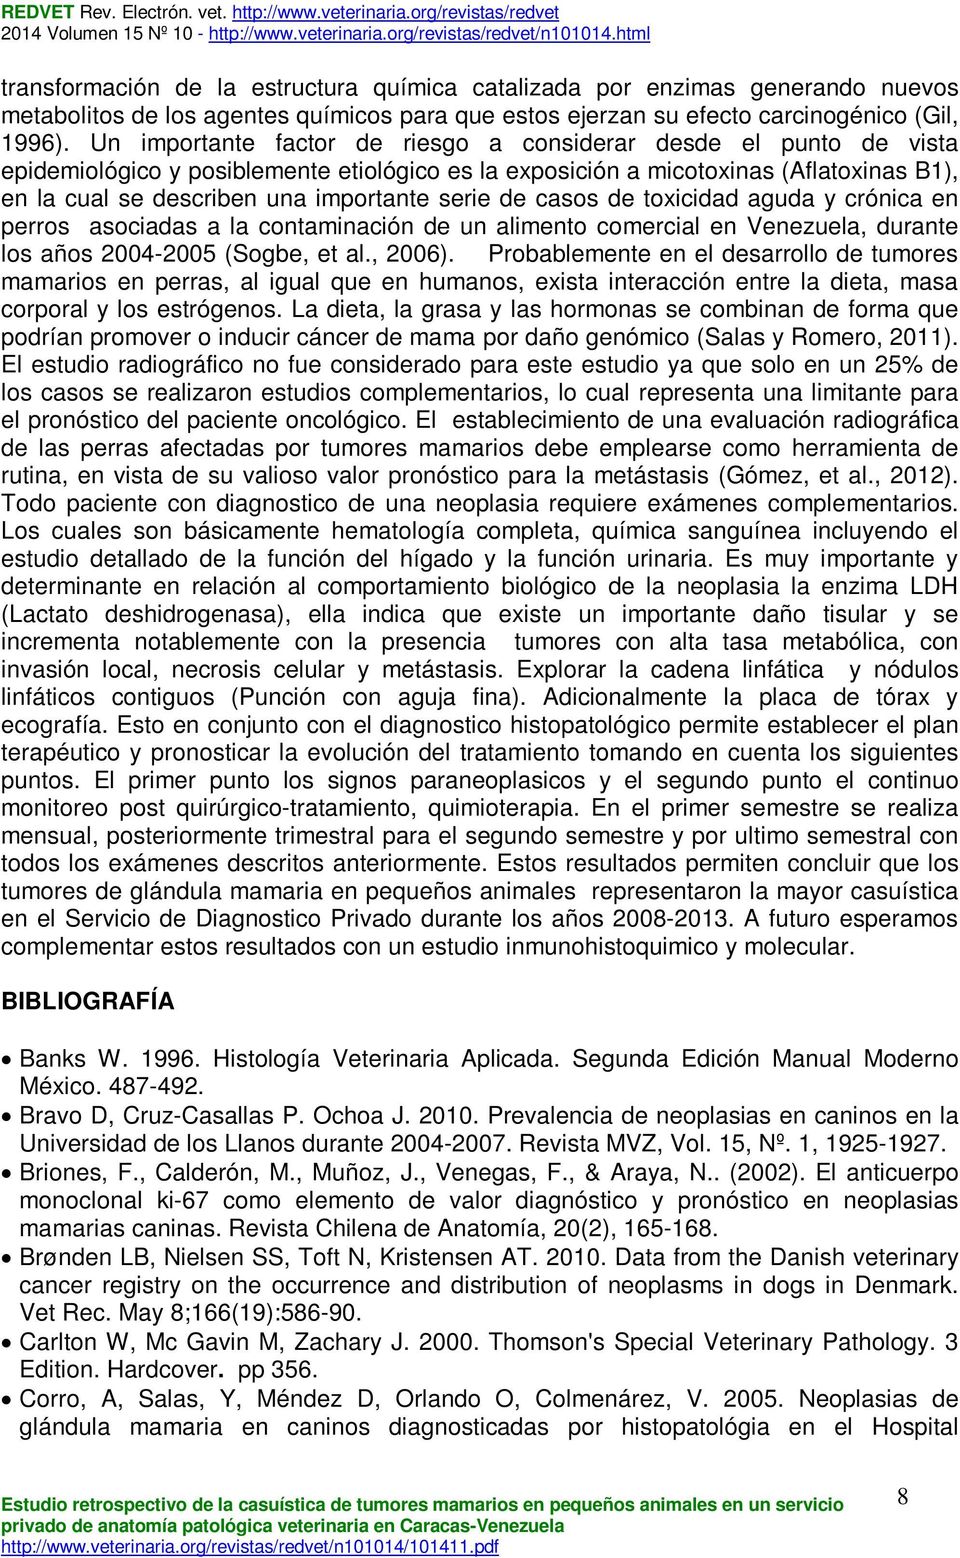 serie de casos de toxicidad aguda y crónica en perros asociadas a la contaminación de un alimento comercial en Venezuela, durante los años 2004-2005 (Sogbe, et al., 2006).